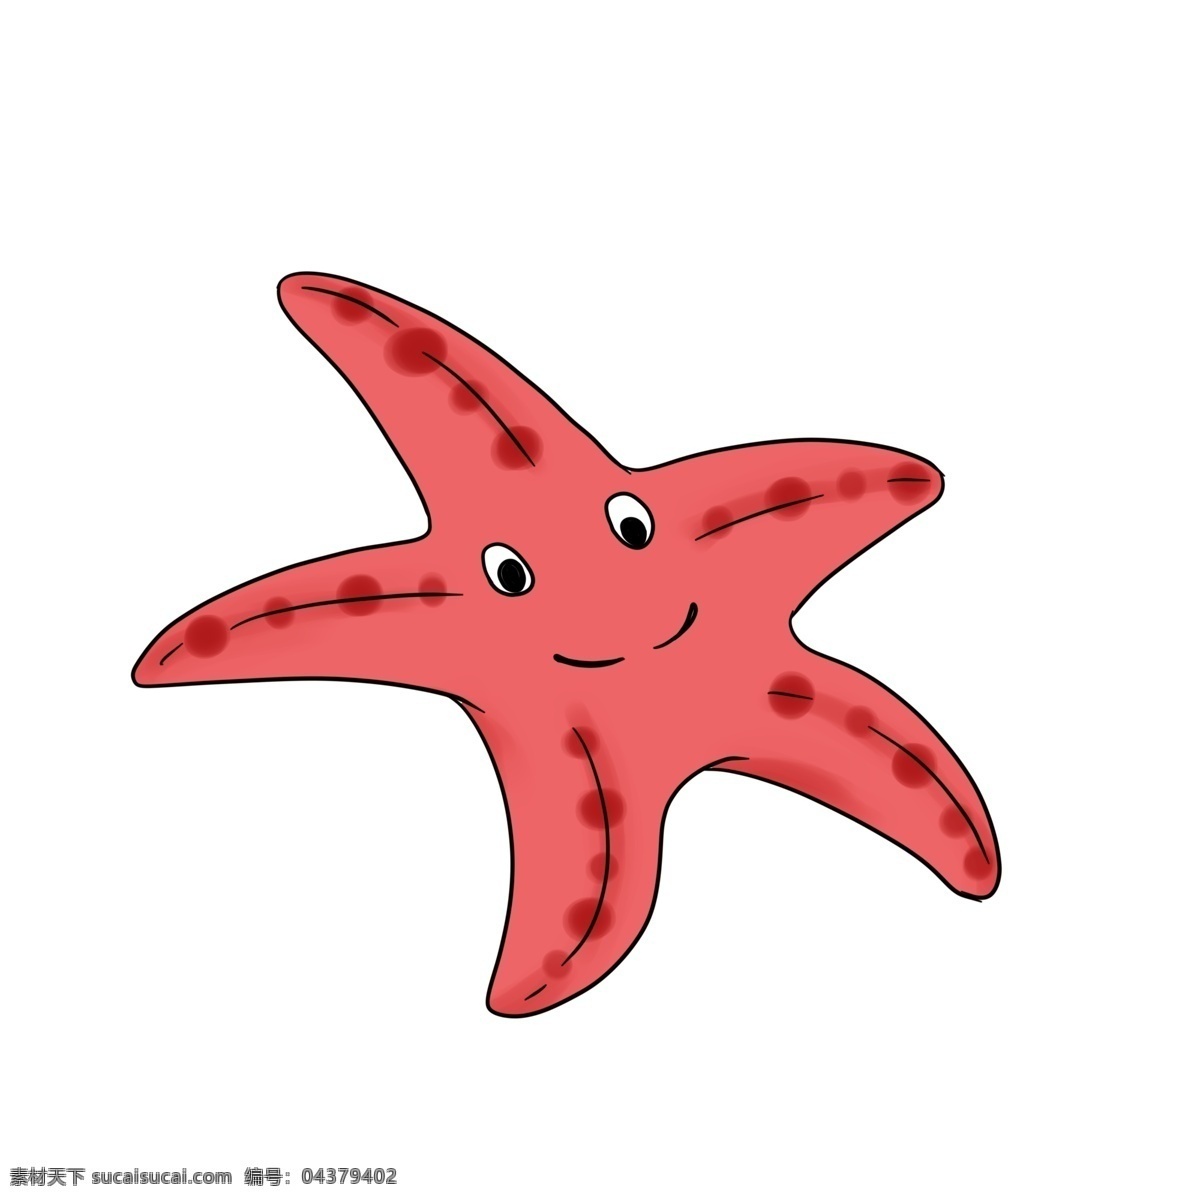 手绘 红色 星星 插画 大海 派大星 海绵宝宝 大海的产物 张大眼的星星 手绘海星插画 创意海星插画